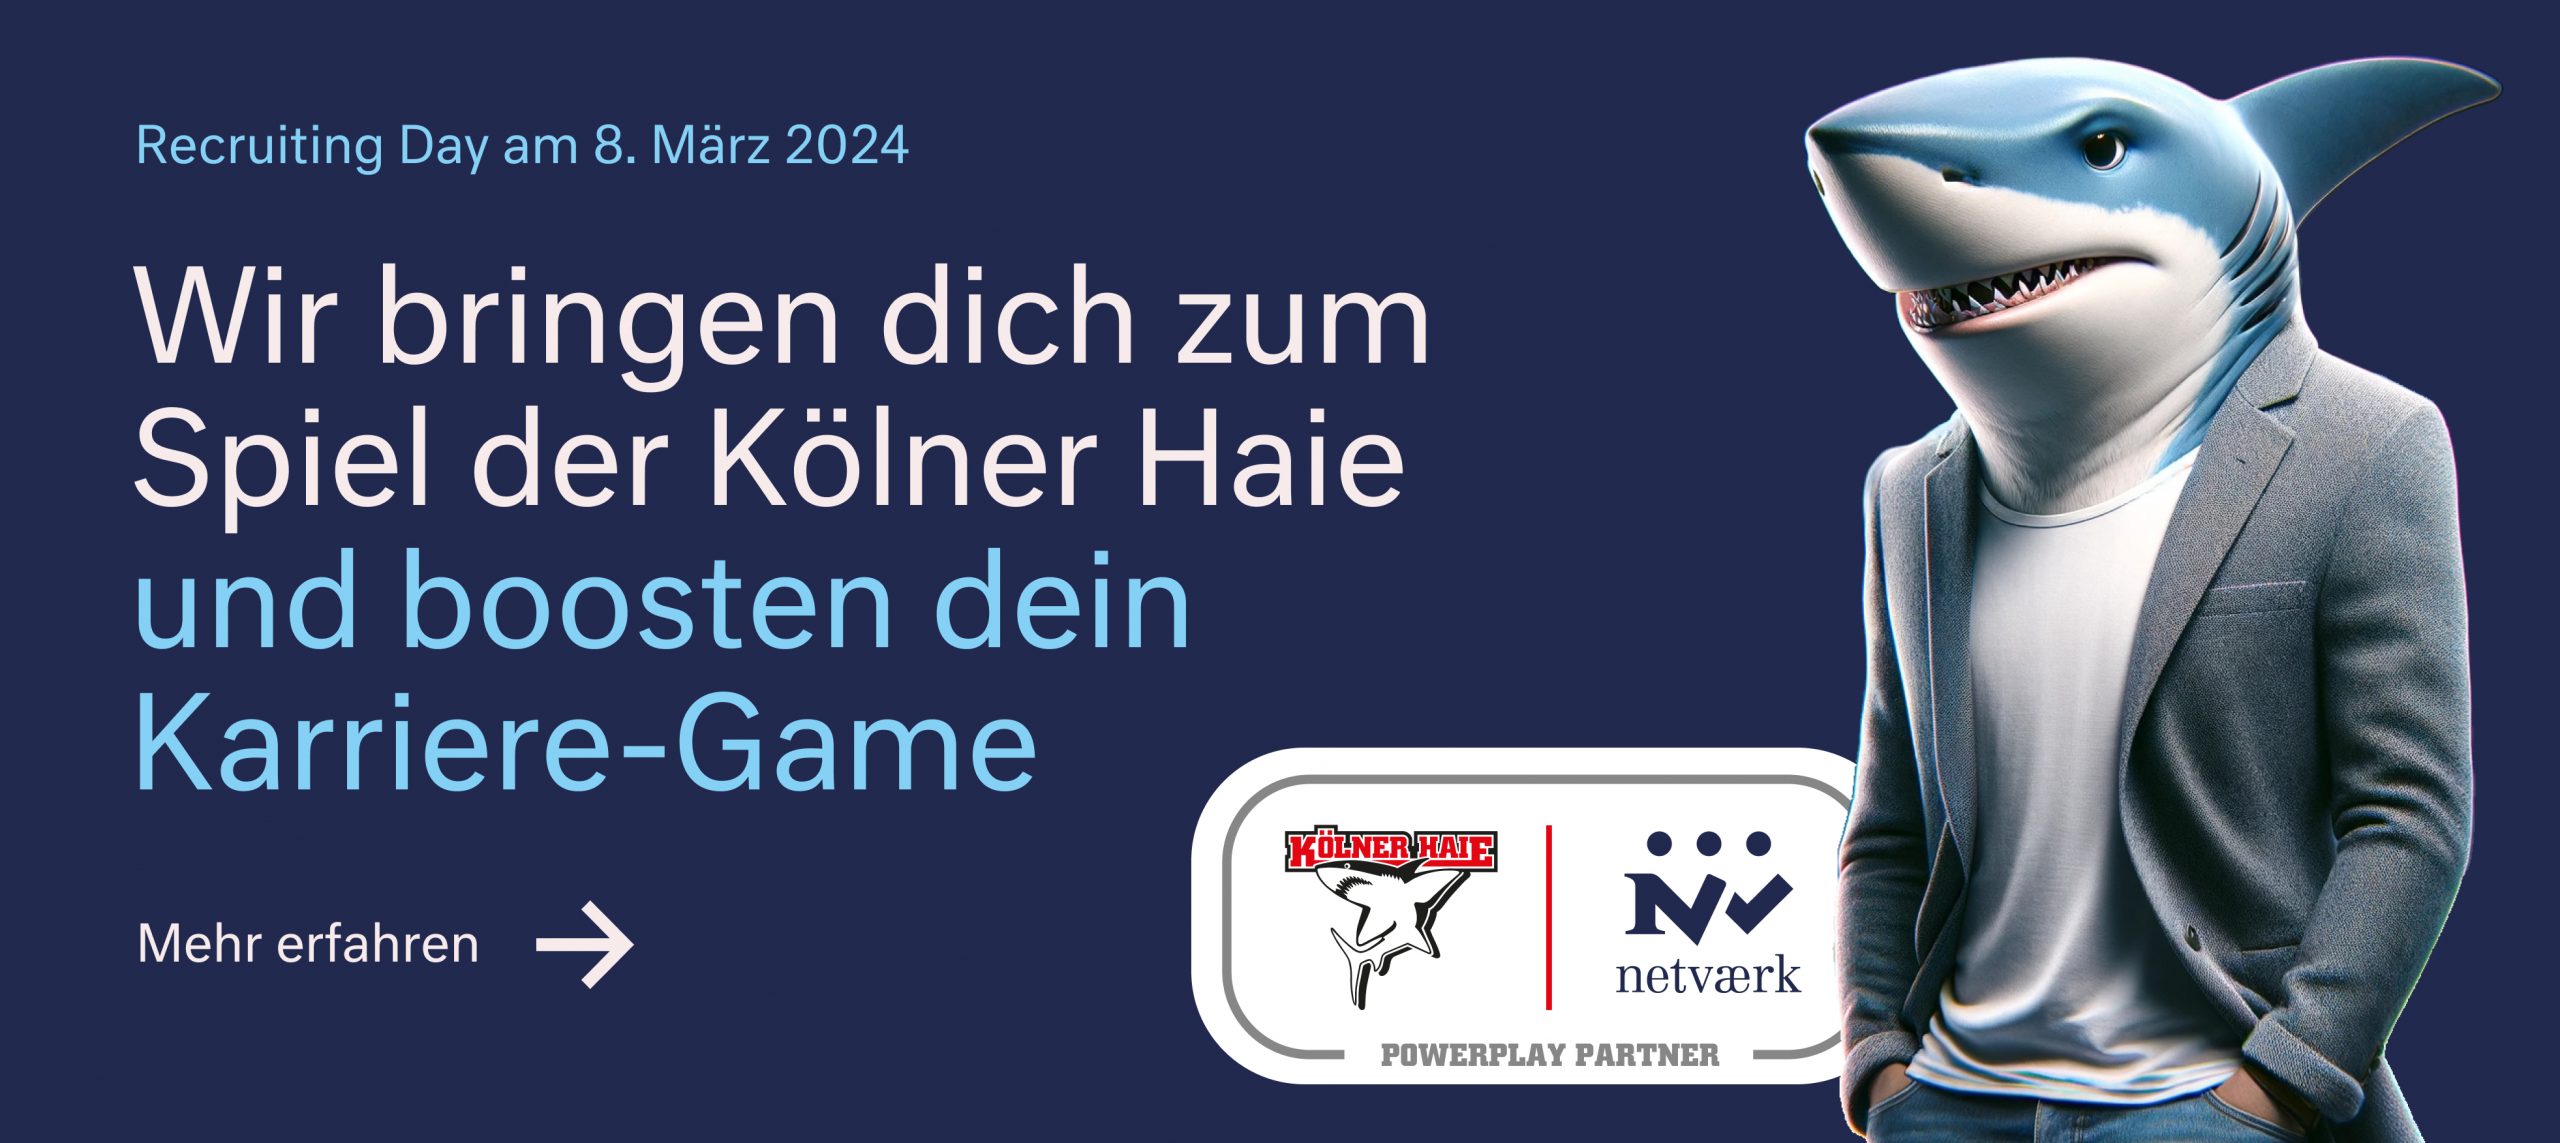 Recruting Day 2024: Wir bringen dich zum Spiel der Kölner Haie